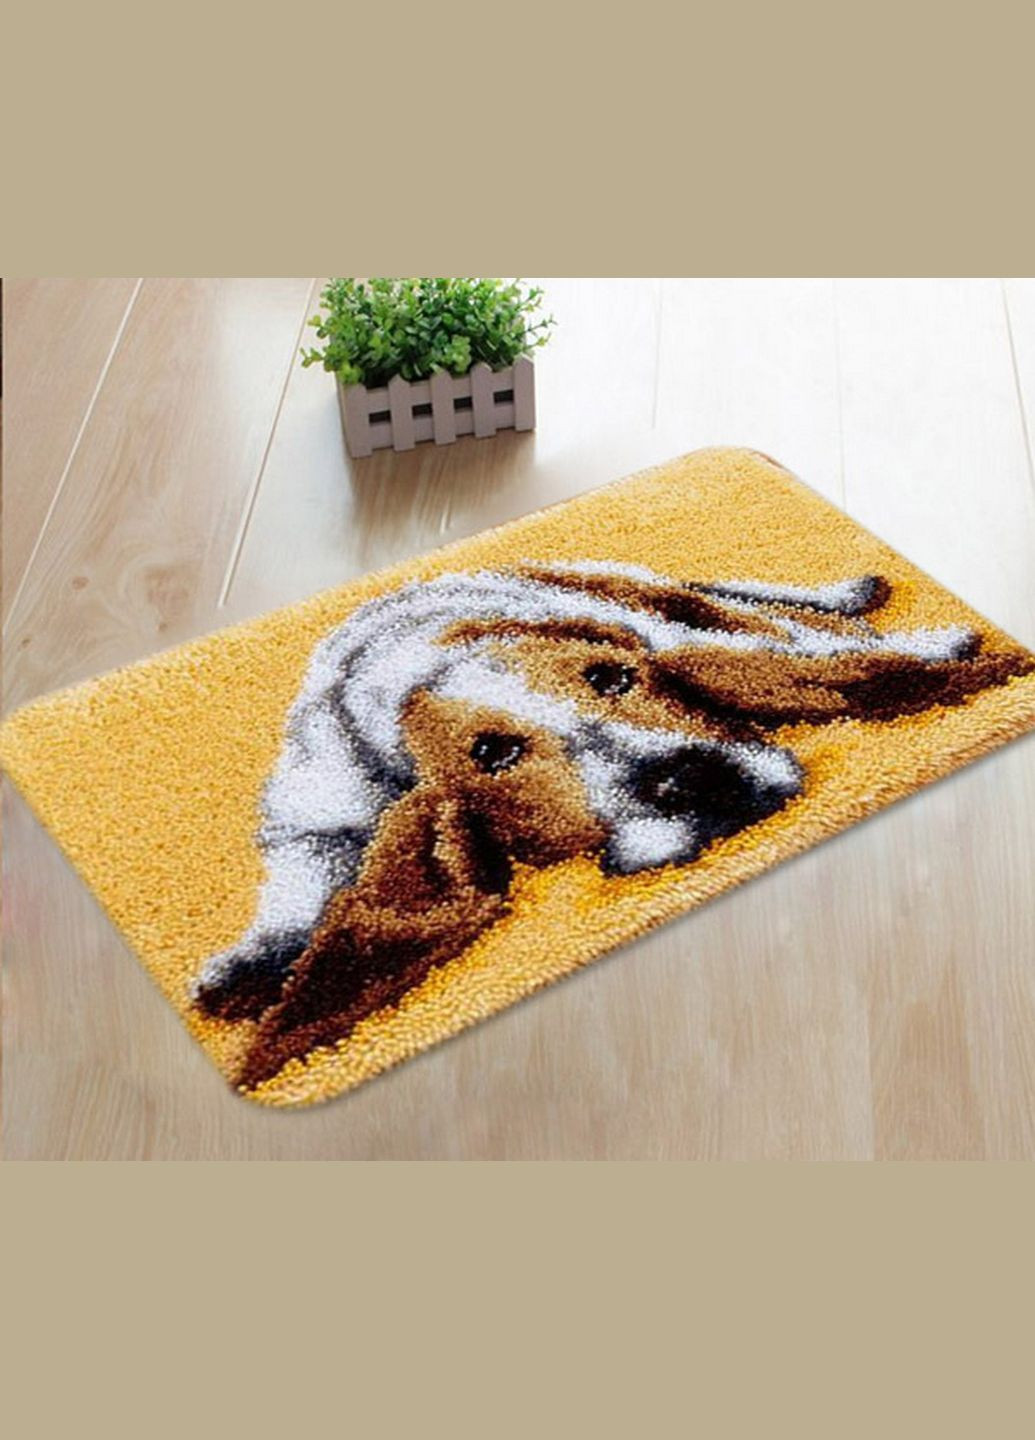 Набор для ковровой вышивки коврик собака бигль (основа-канва, нити, крючок для ковровой вышивки) No Brand 4459 (293943058)